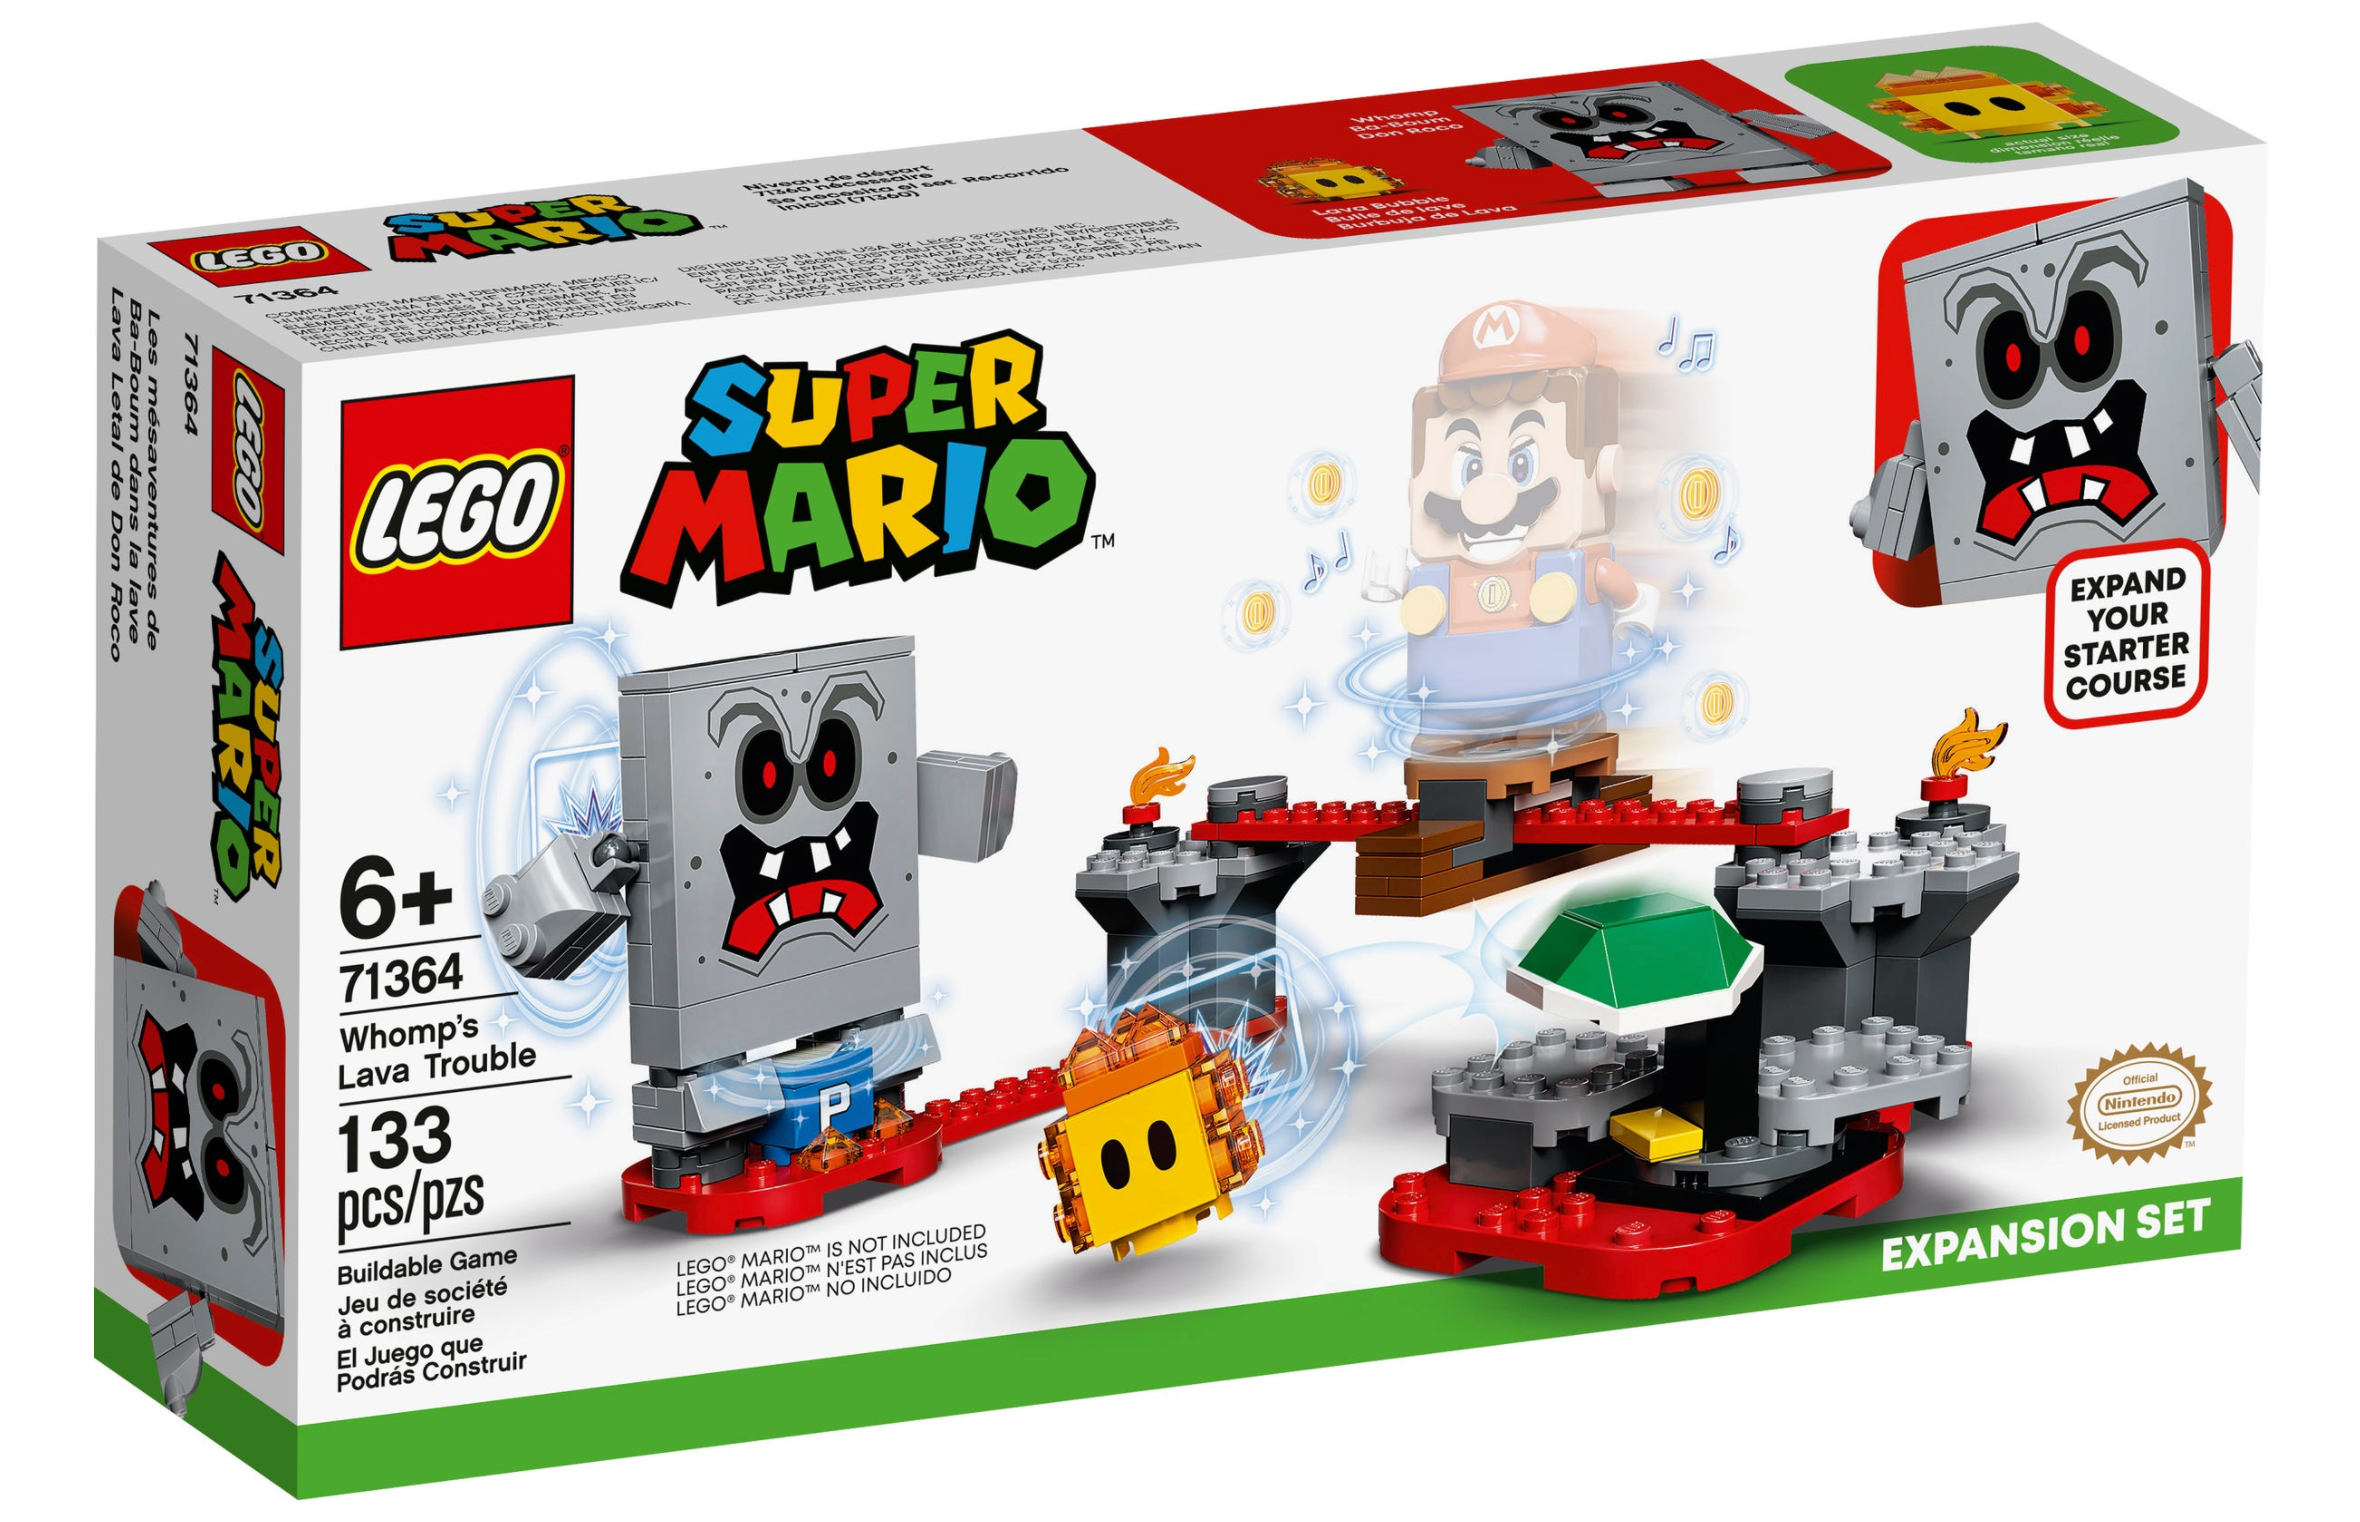 LEGO: Super Mario - Whomp's Lava Trouble Expansion Set